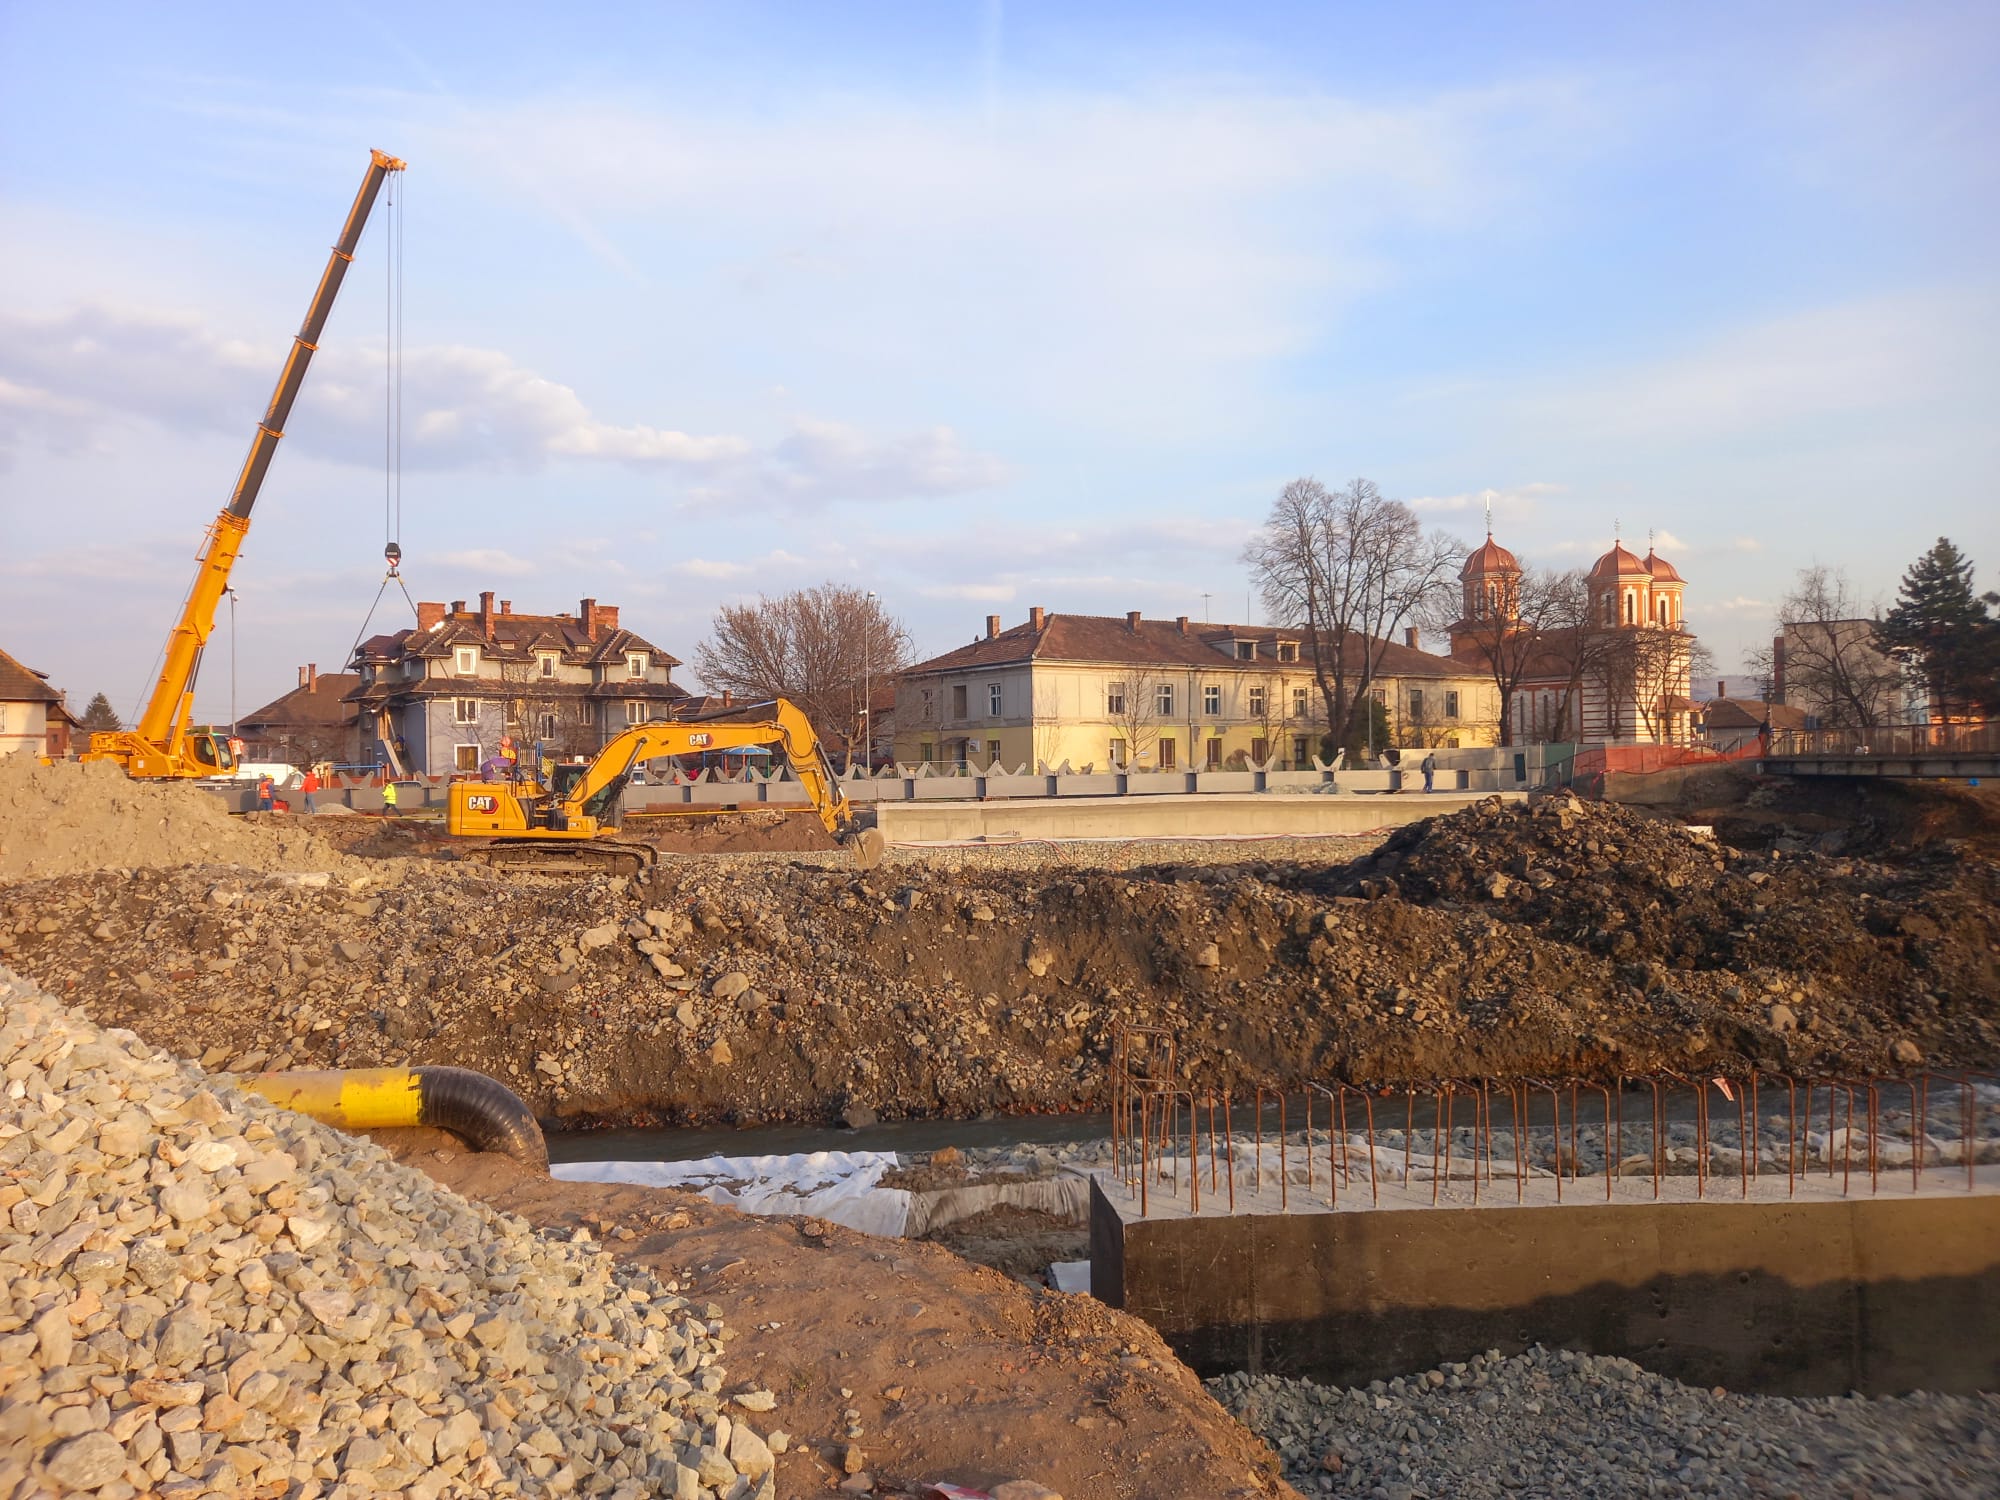 Lucrări la Podul Răsăritului, 29.03.2022. Sursa foto: Monitorul de Cluj